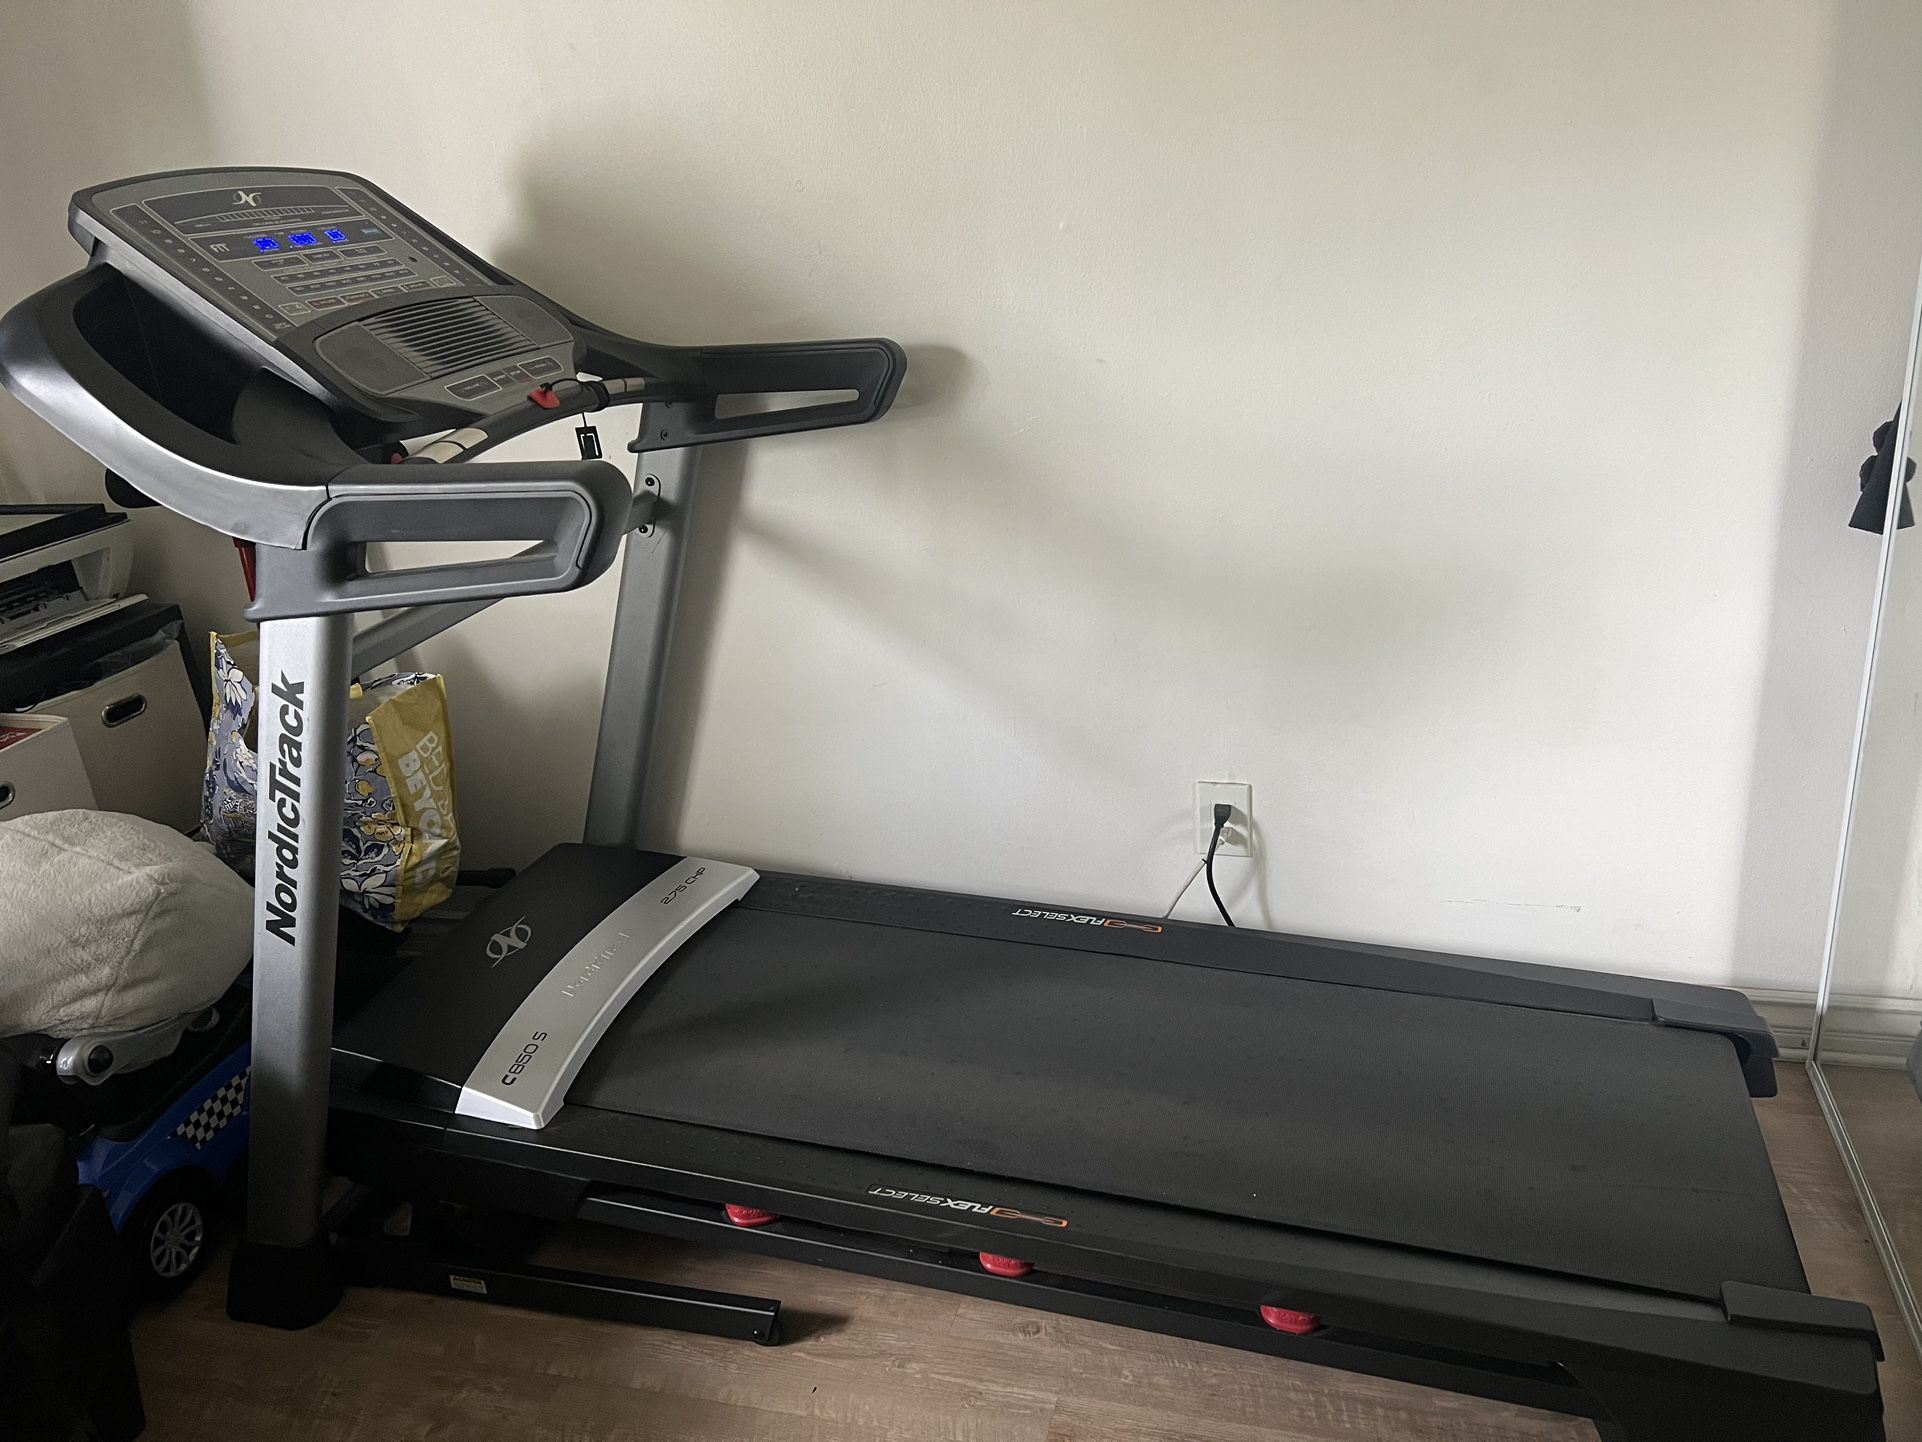  Nordic Track Treadmill